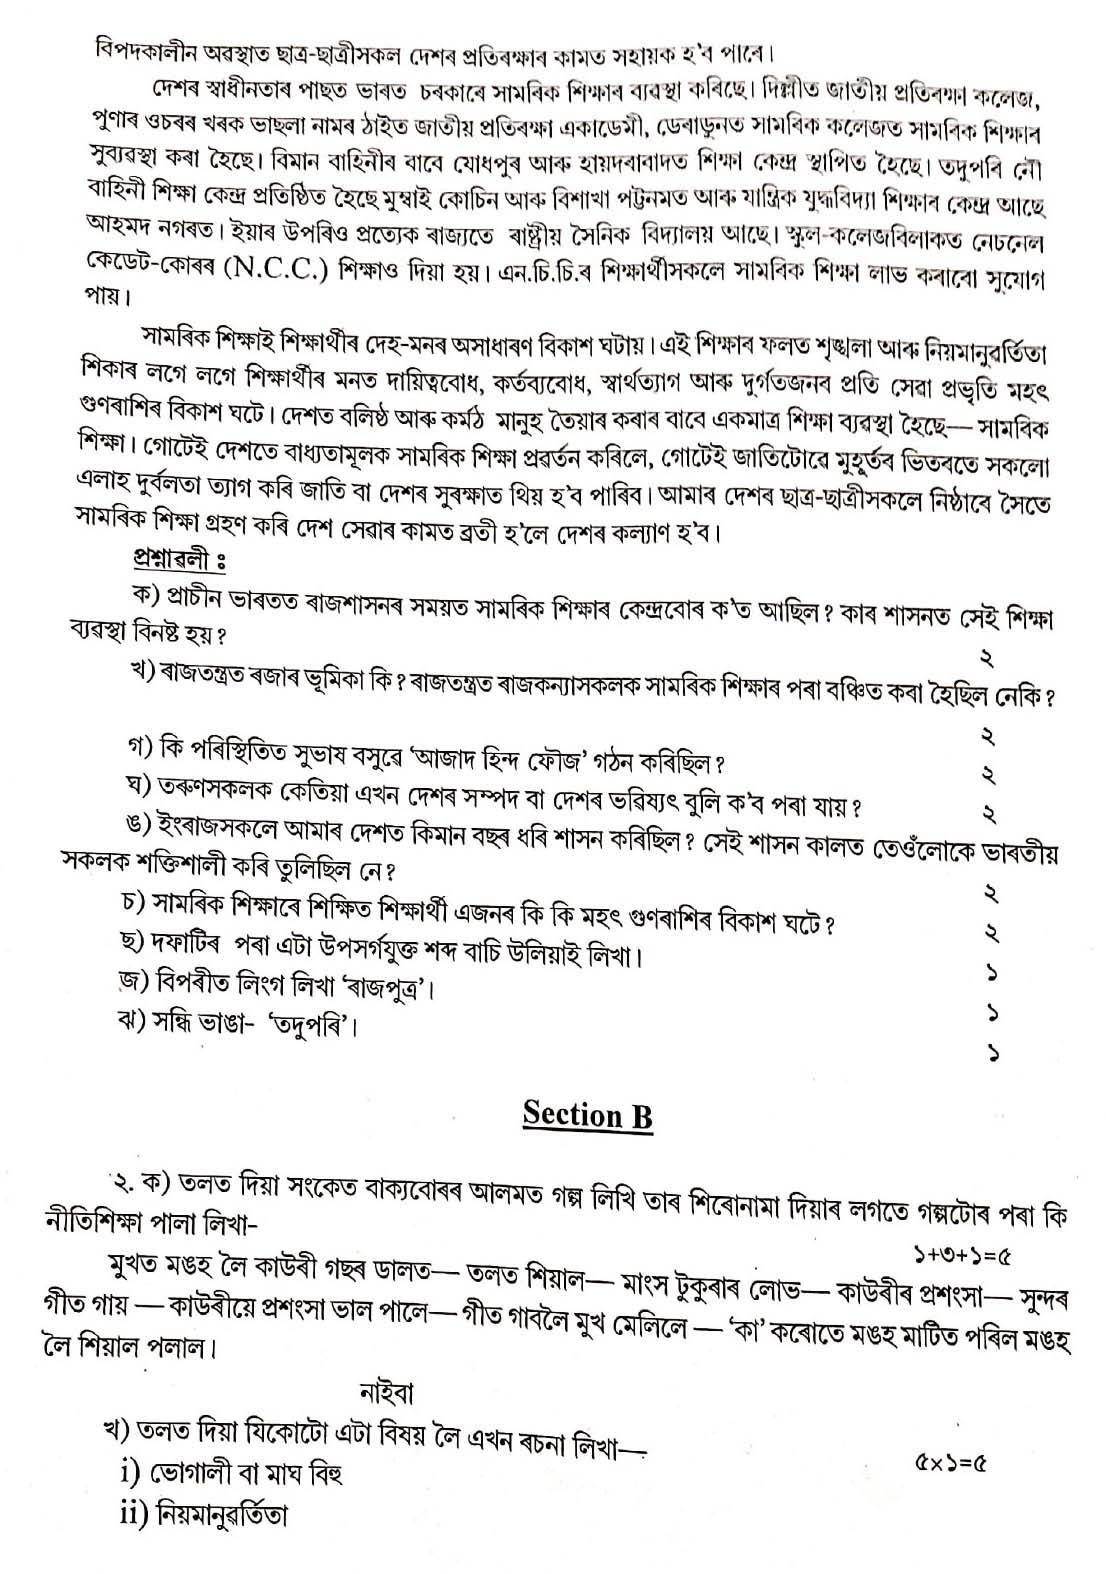 Assamese CBSE Class X Sample Question Paper 2019 20 - Image 2